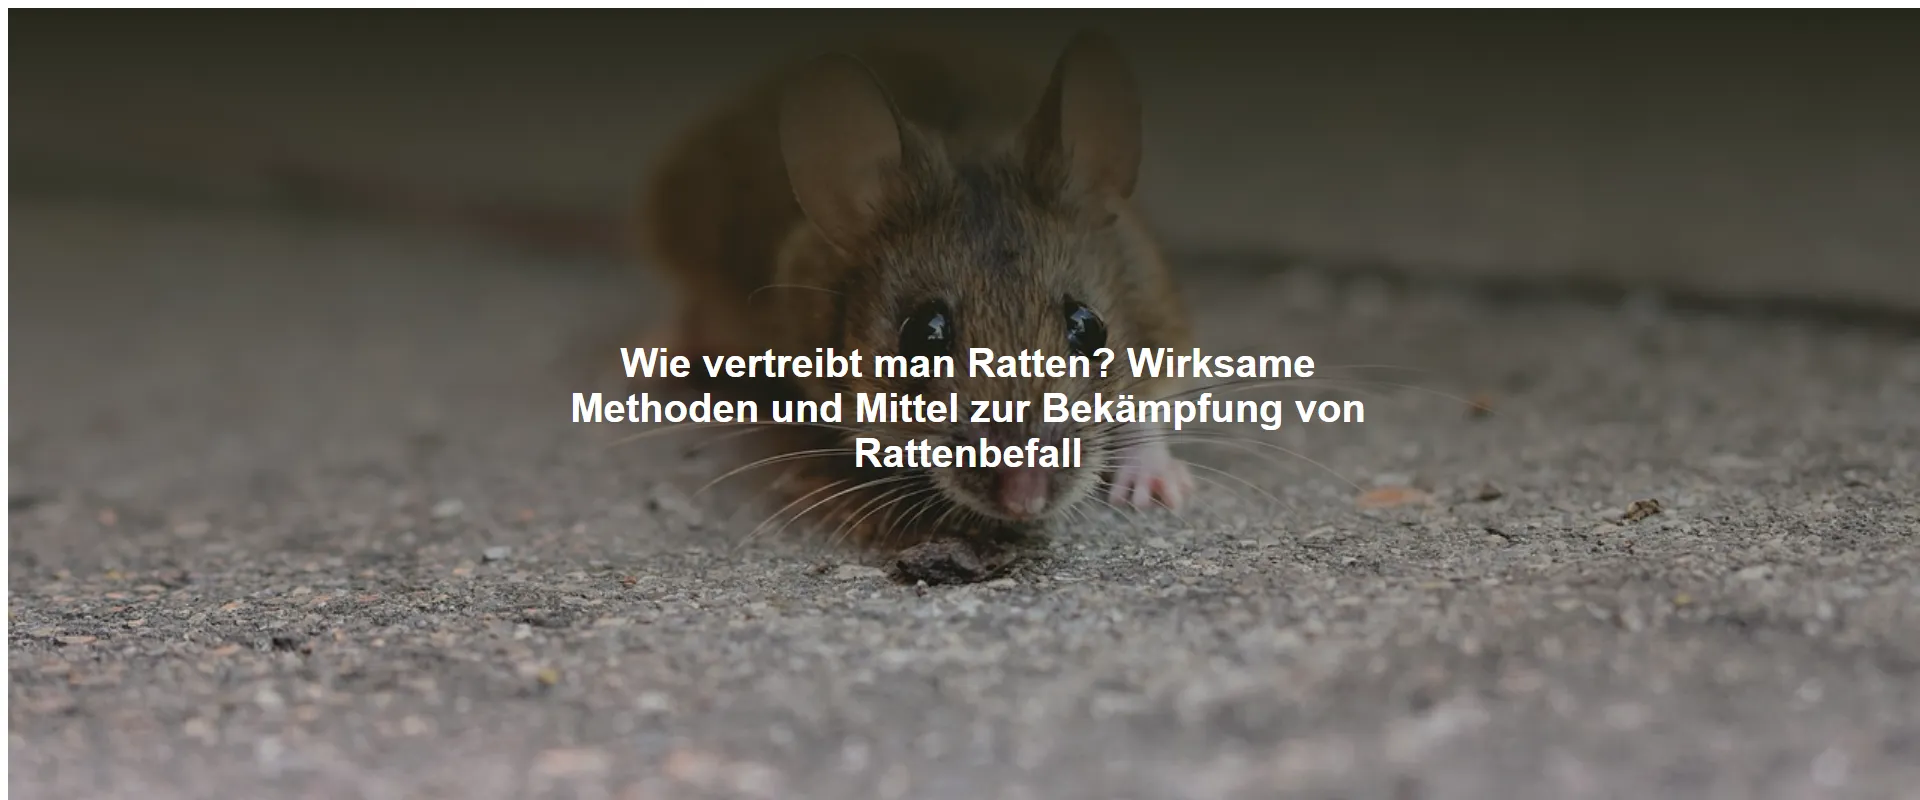 Wie vertreibt man Ratten? Wirksame Methoden und Mittel zur Bekämpfung von Rattenbefall